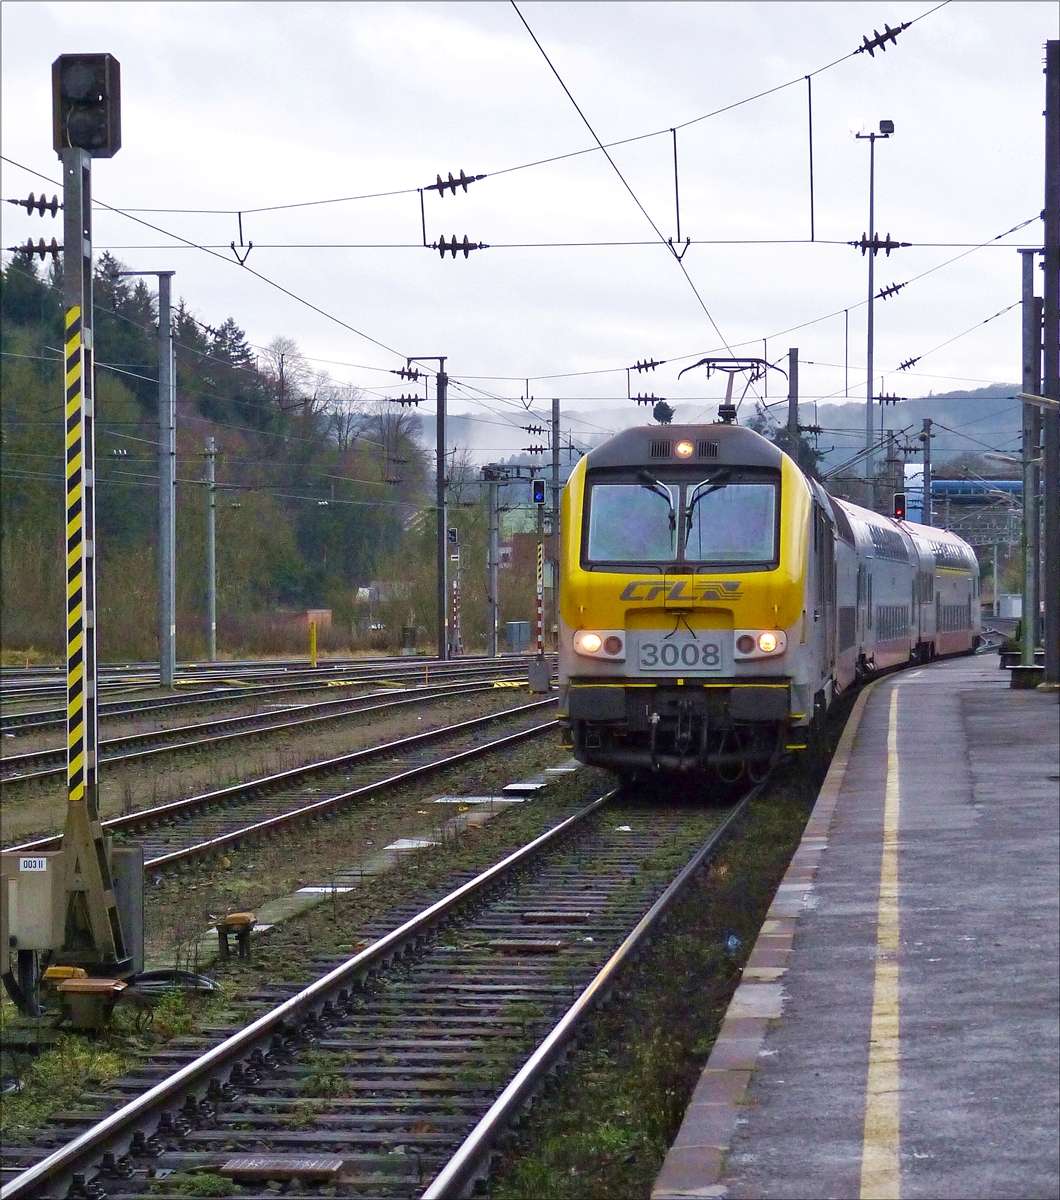 . CFL 3008 fhrt mit kurzem Wendezug in den Bahnhof von Ettelbrck ein, nach kurzem Halt setzt sie ihre Reise zum nchsten Bahnhof, der Endhaltestelle Diekirch fort.  22.12.2017  (Hans)